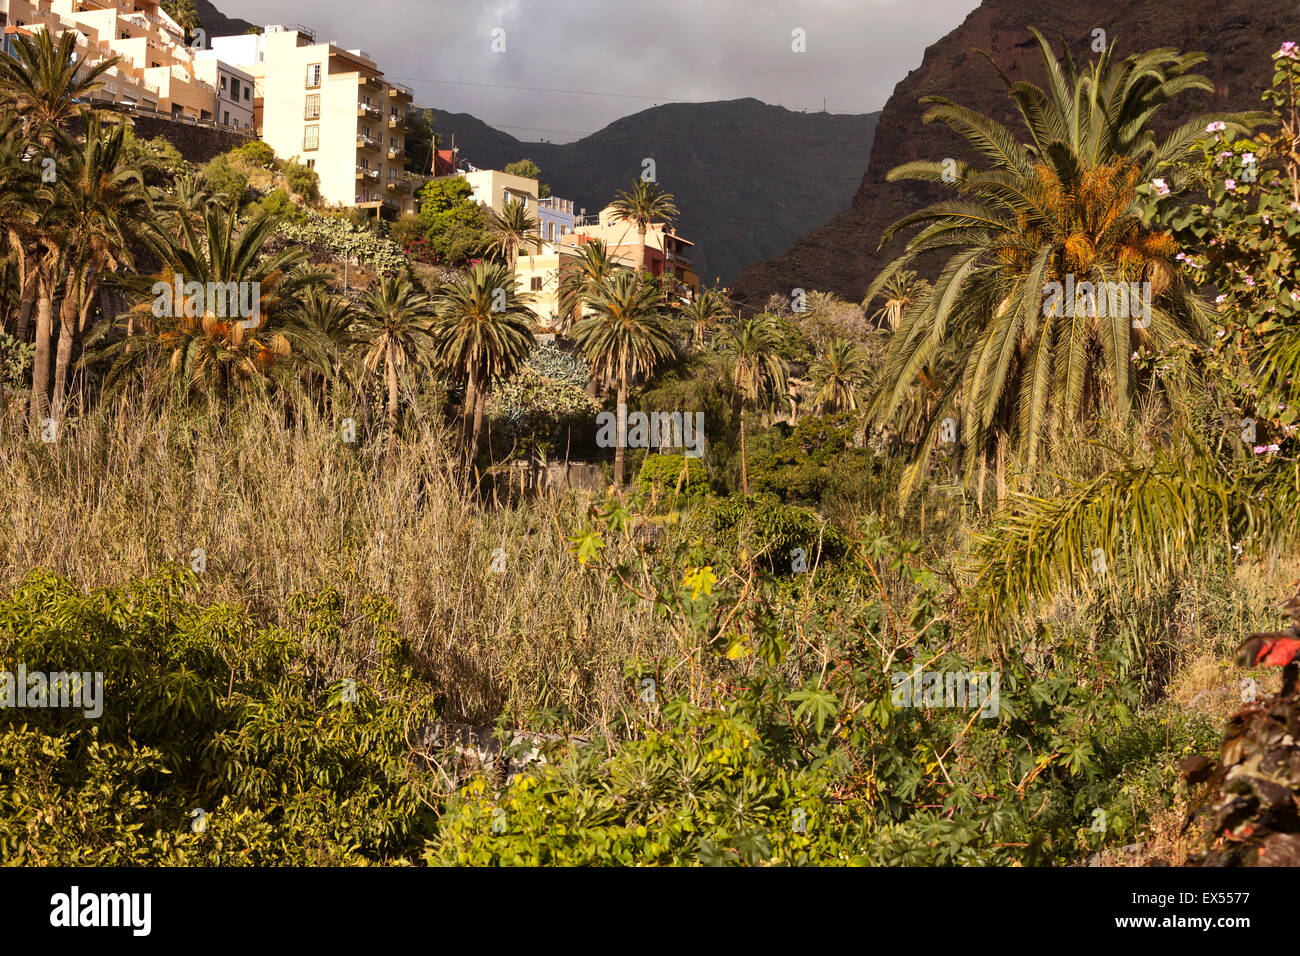 Paysage typique avec palmiers date de la vallée Valle Gran Rey, La Gomera, Canary Islands, Spain, Europe Banque D'Images